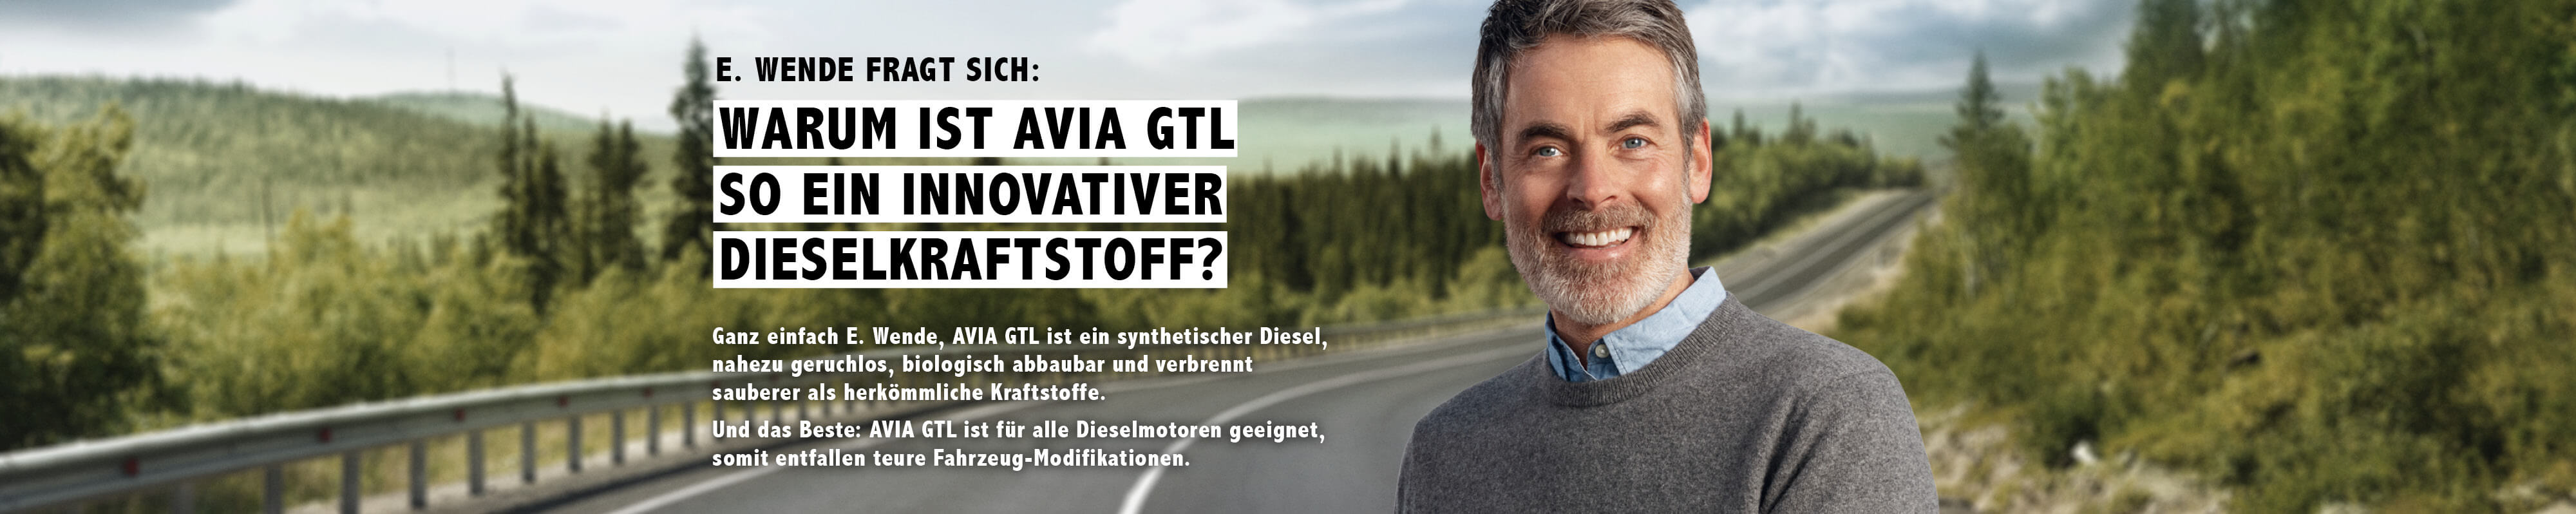 GTL-Diesel